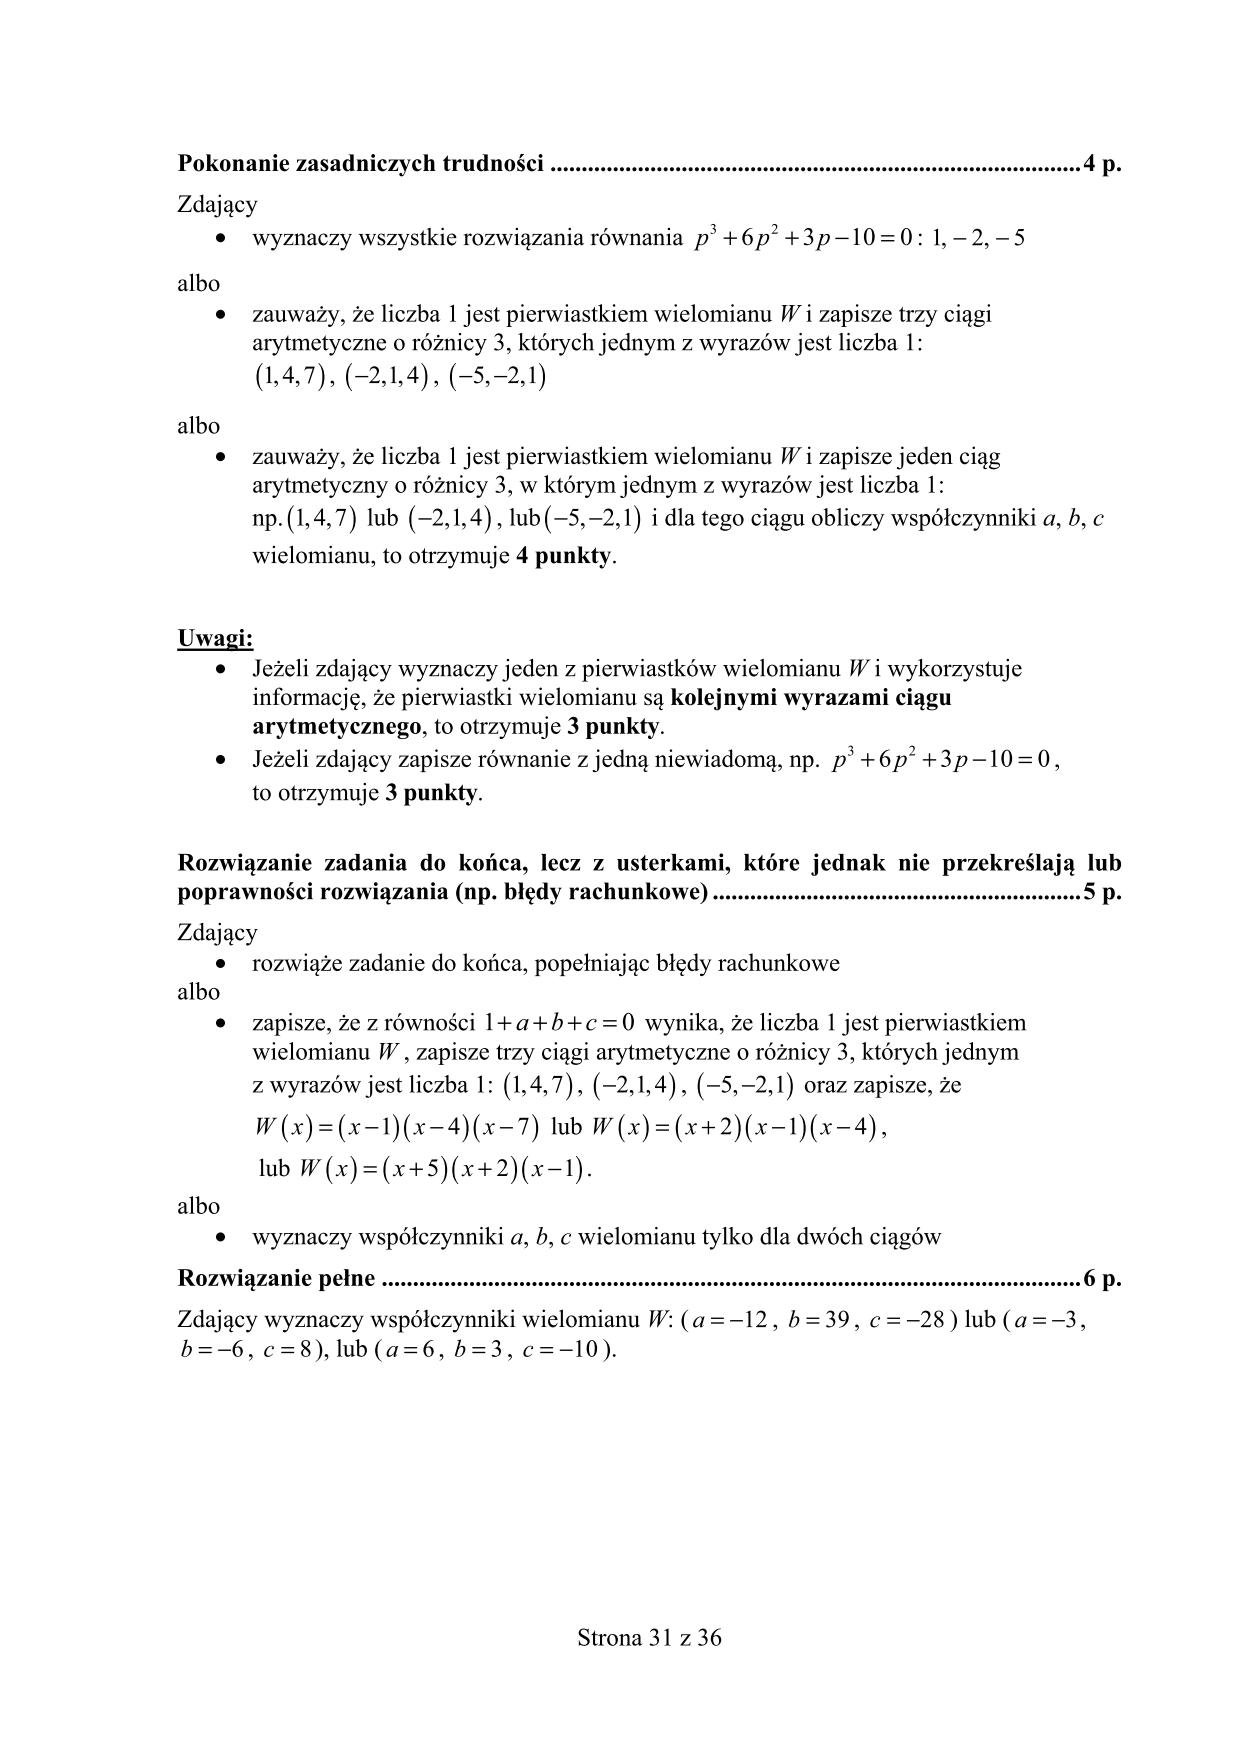 odpowiedzi-matematyka-poziom-rozszerzony-matura-2015-31